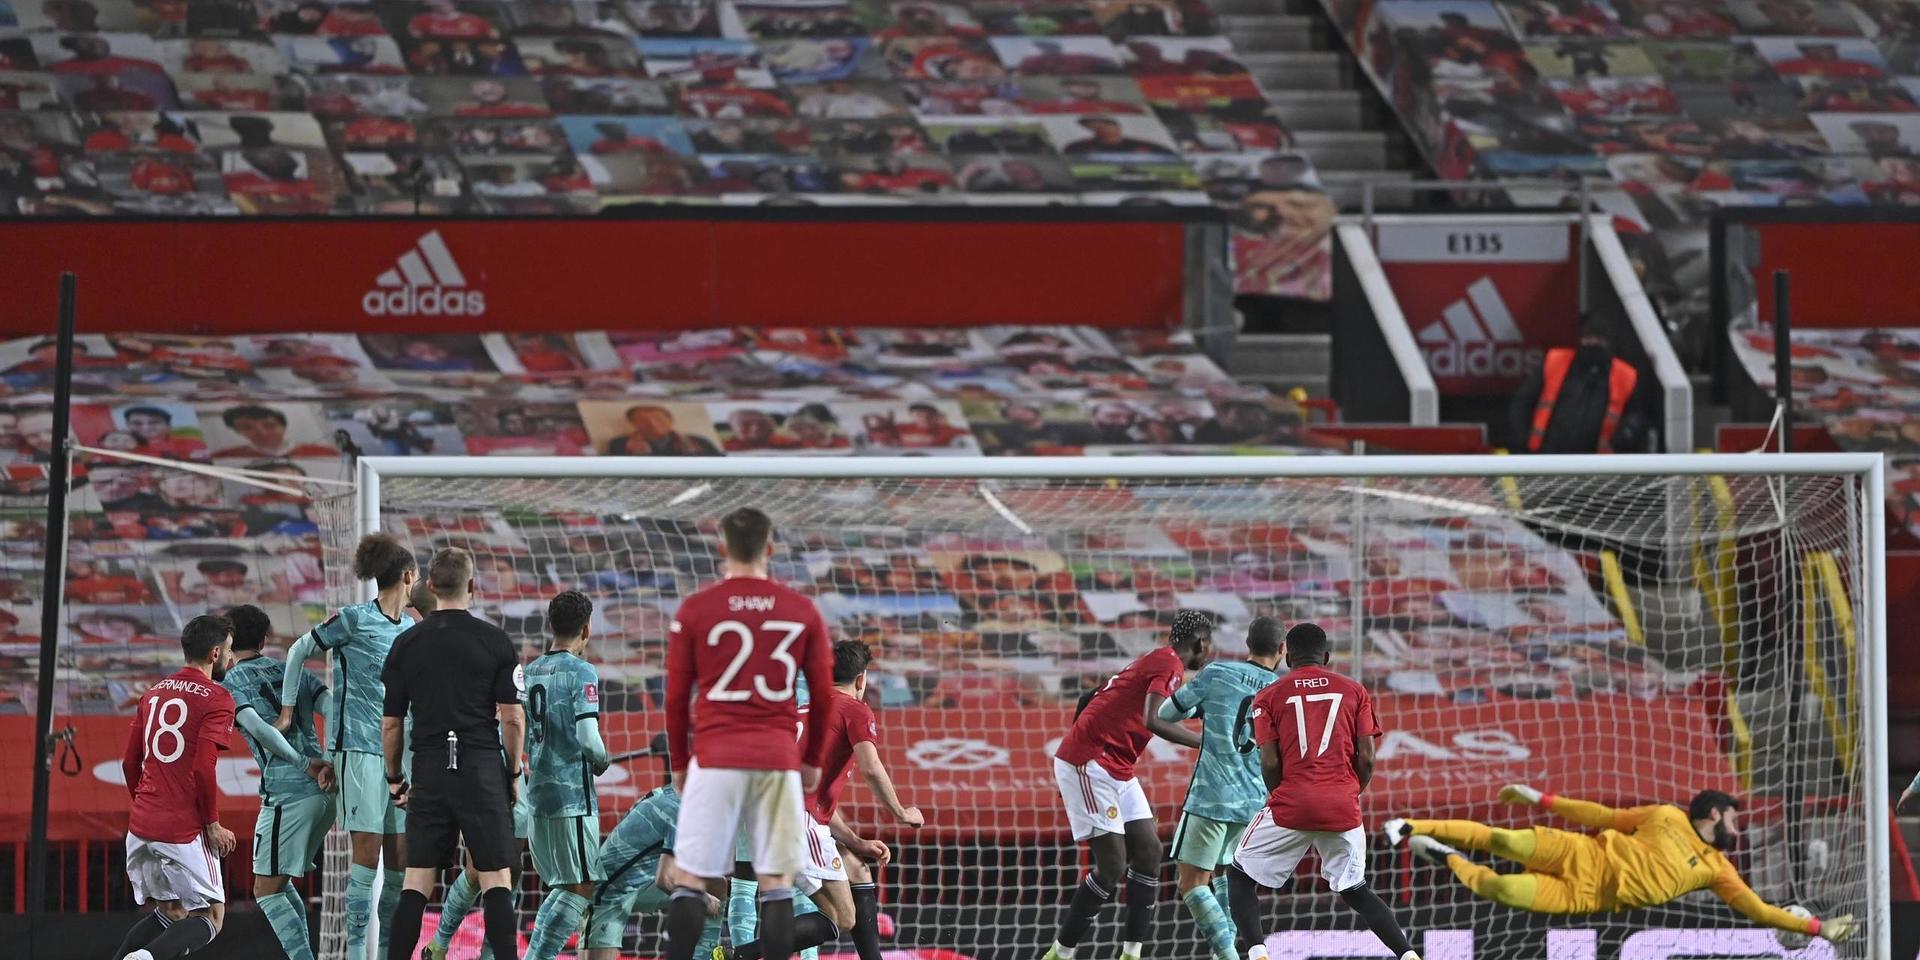 Bruno Fernandes, till vänster, skickar bollen i mål och Manchester United vidare till nästa omgång i FA-cupen.